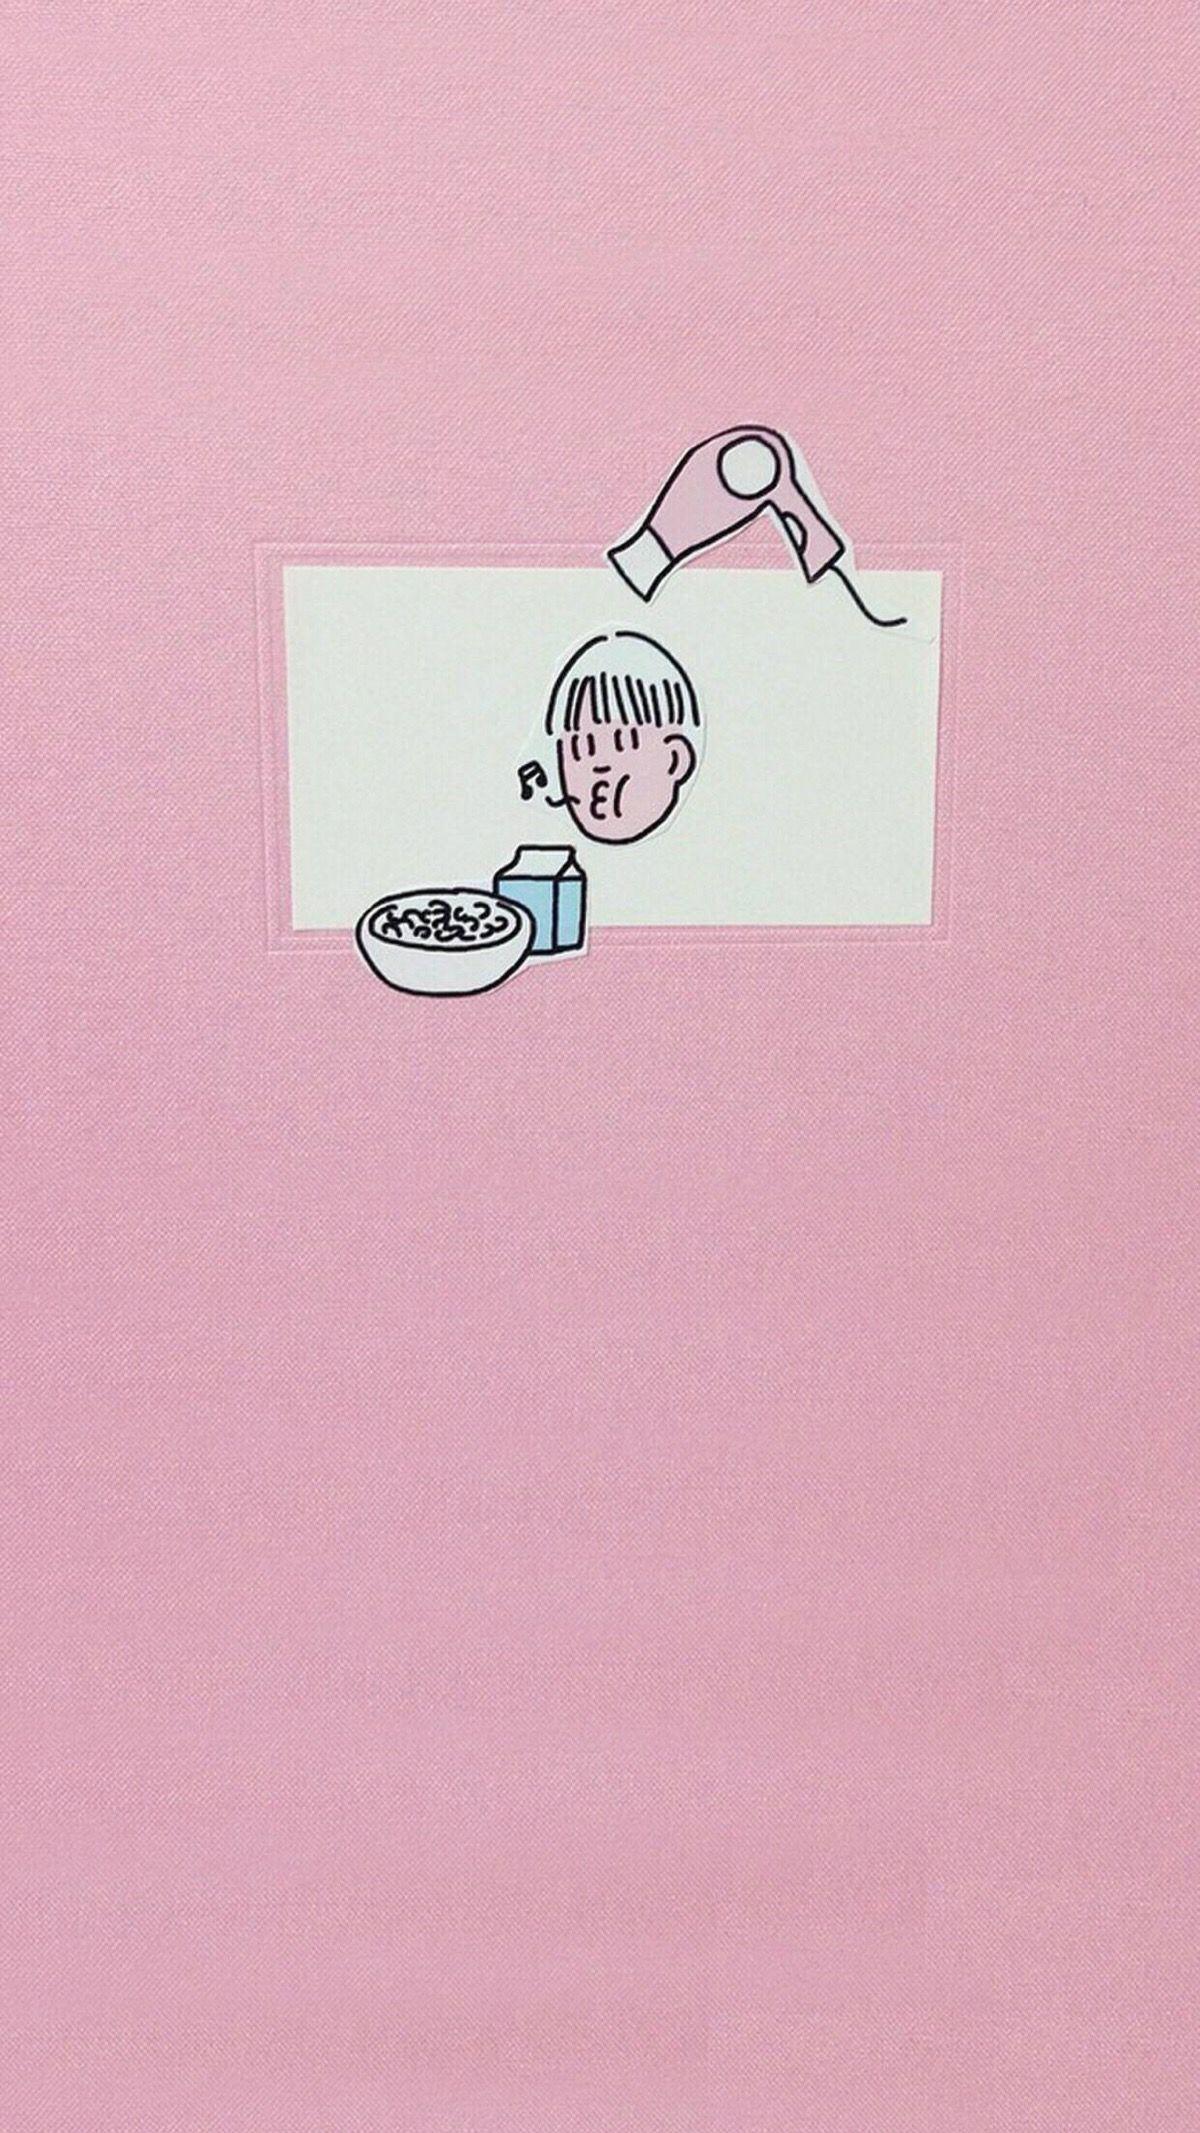 有没有超级可爱的粉色系动漫壁纸? - 知乎